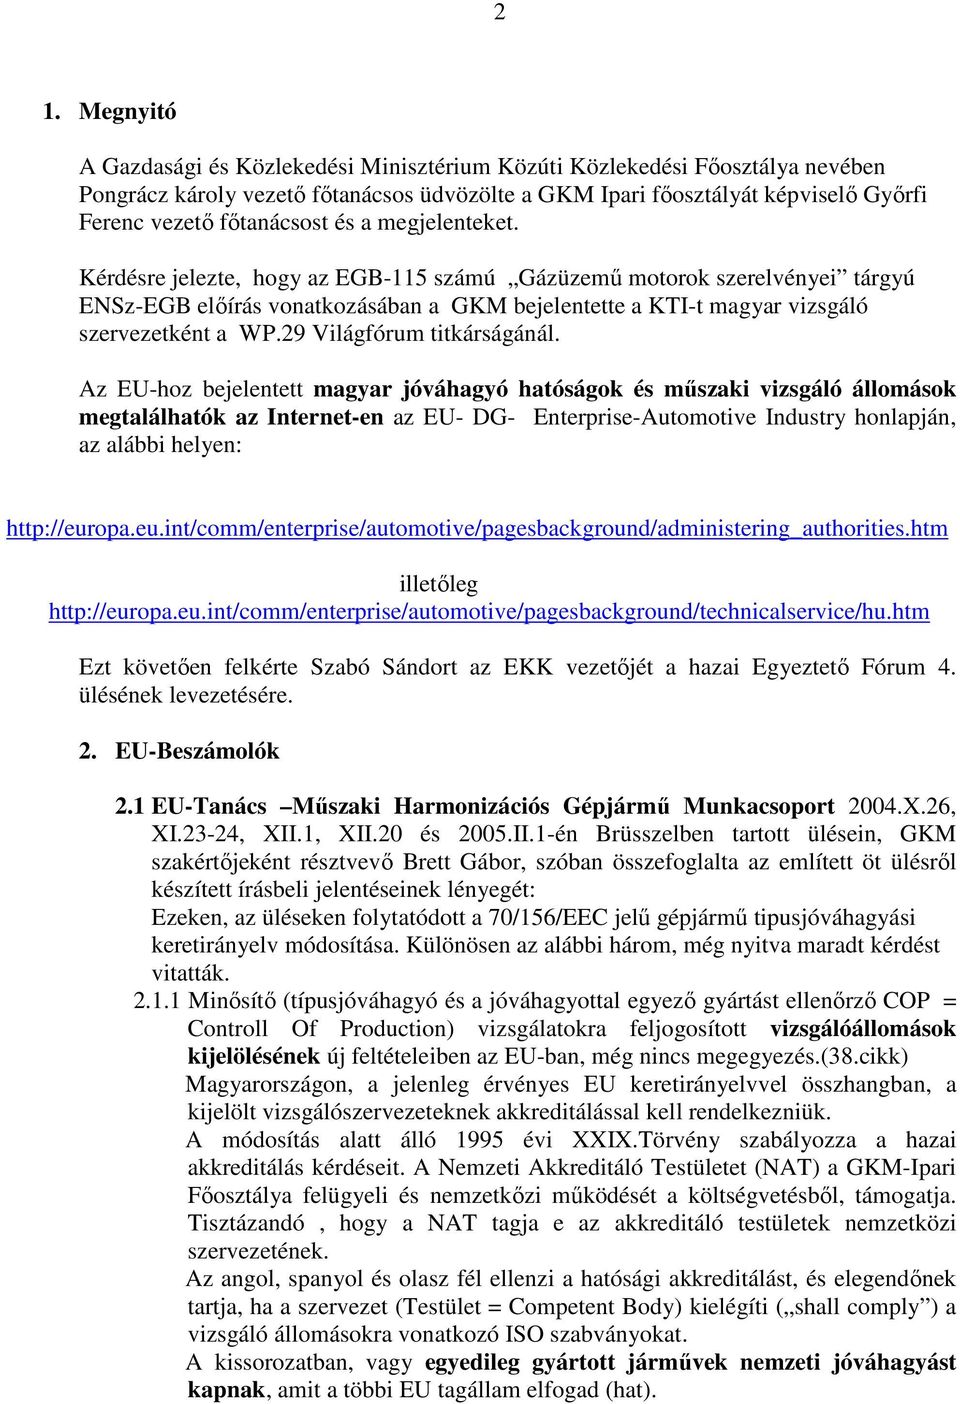 Kérdésre jelezte, hogy az EGB-115 számú Gázüzemő motorok szerelvényei tárgyú ENSz-EGB elıírás vonatkozásában a GKM bejelentette a KTI-t magyar vizsgáló szervezetként a WP.29 Világfórum titkárságánál.